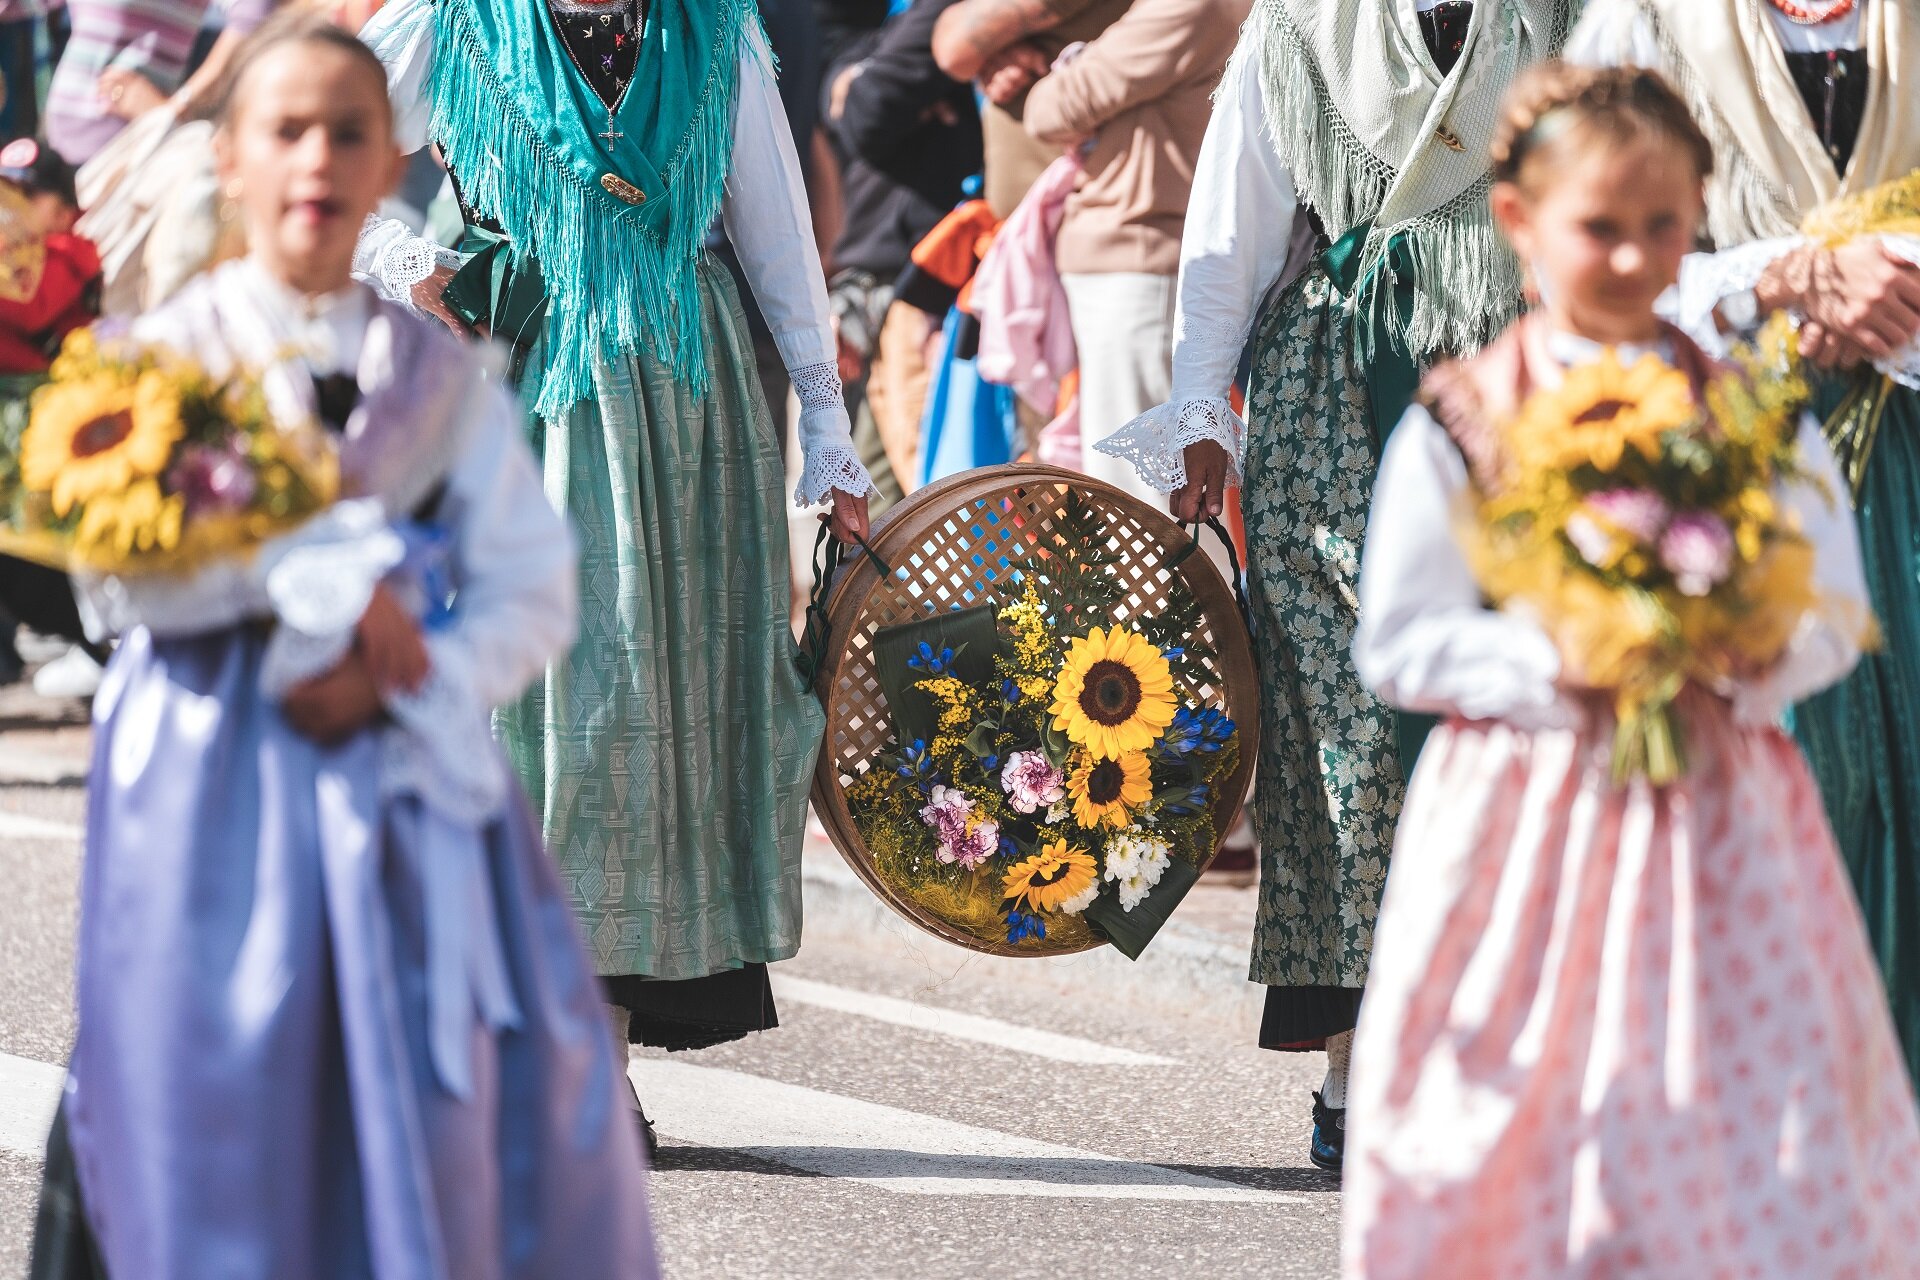 Decorazioni floreali tipiche del folklore ladino alla sfilata della Festà d'Istà a Canazei in Val di Fassa | © Patricia Ramirez  - Archivio Immagini ApT Val di Fassa